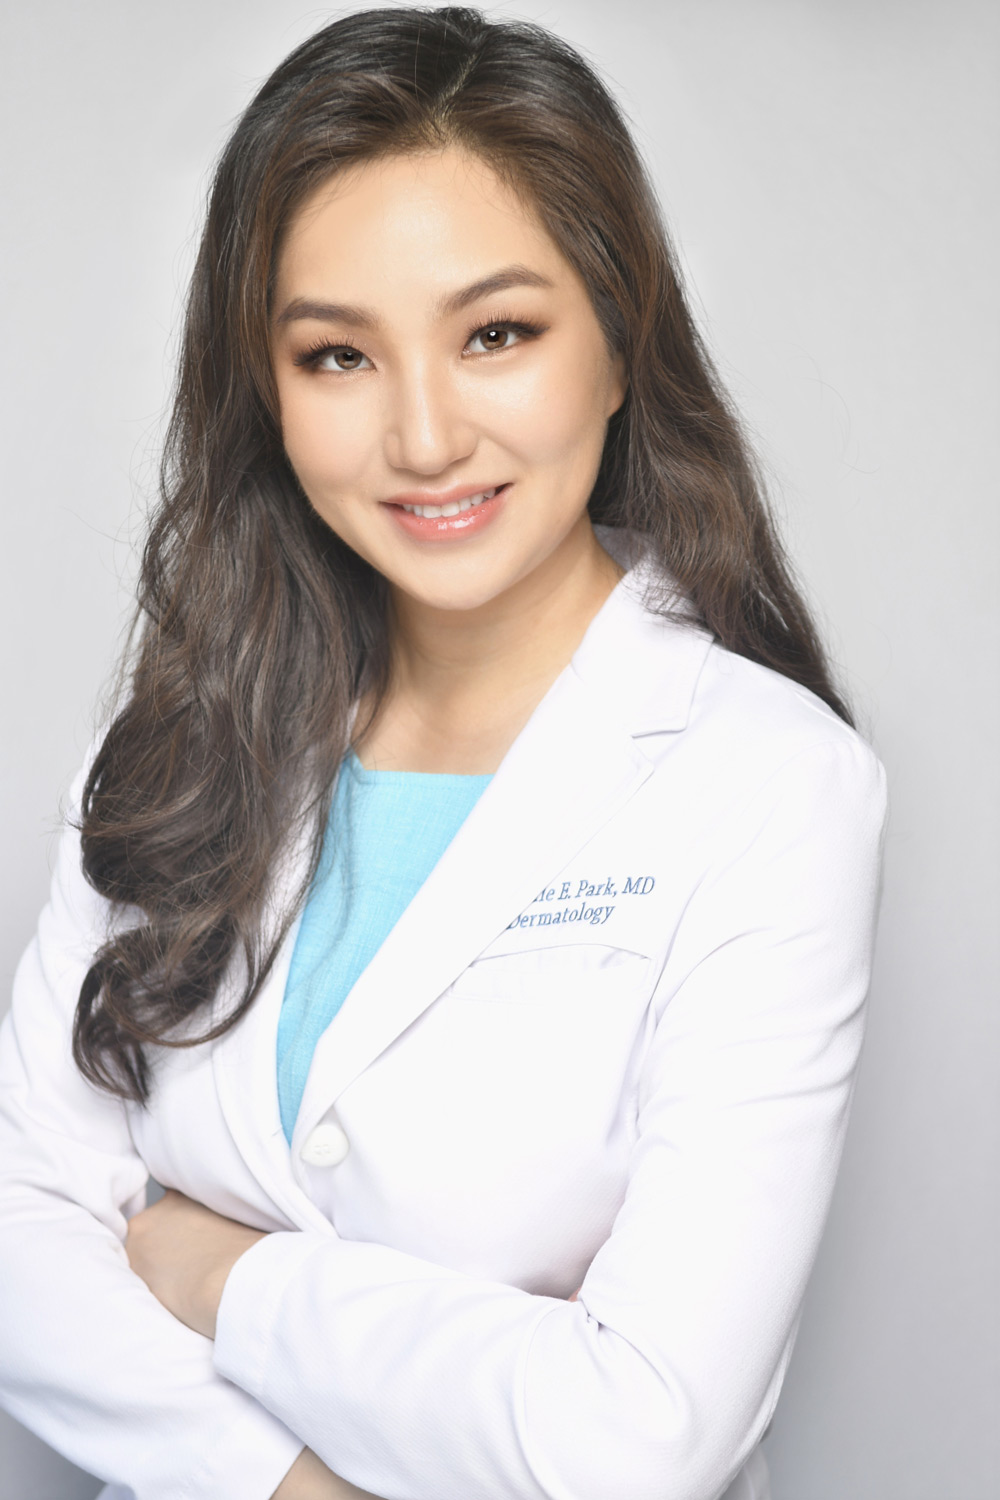 Dr. Park Headshot